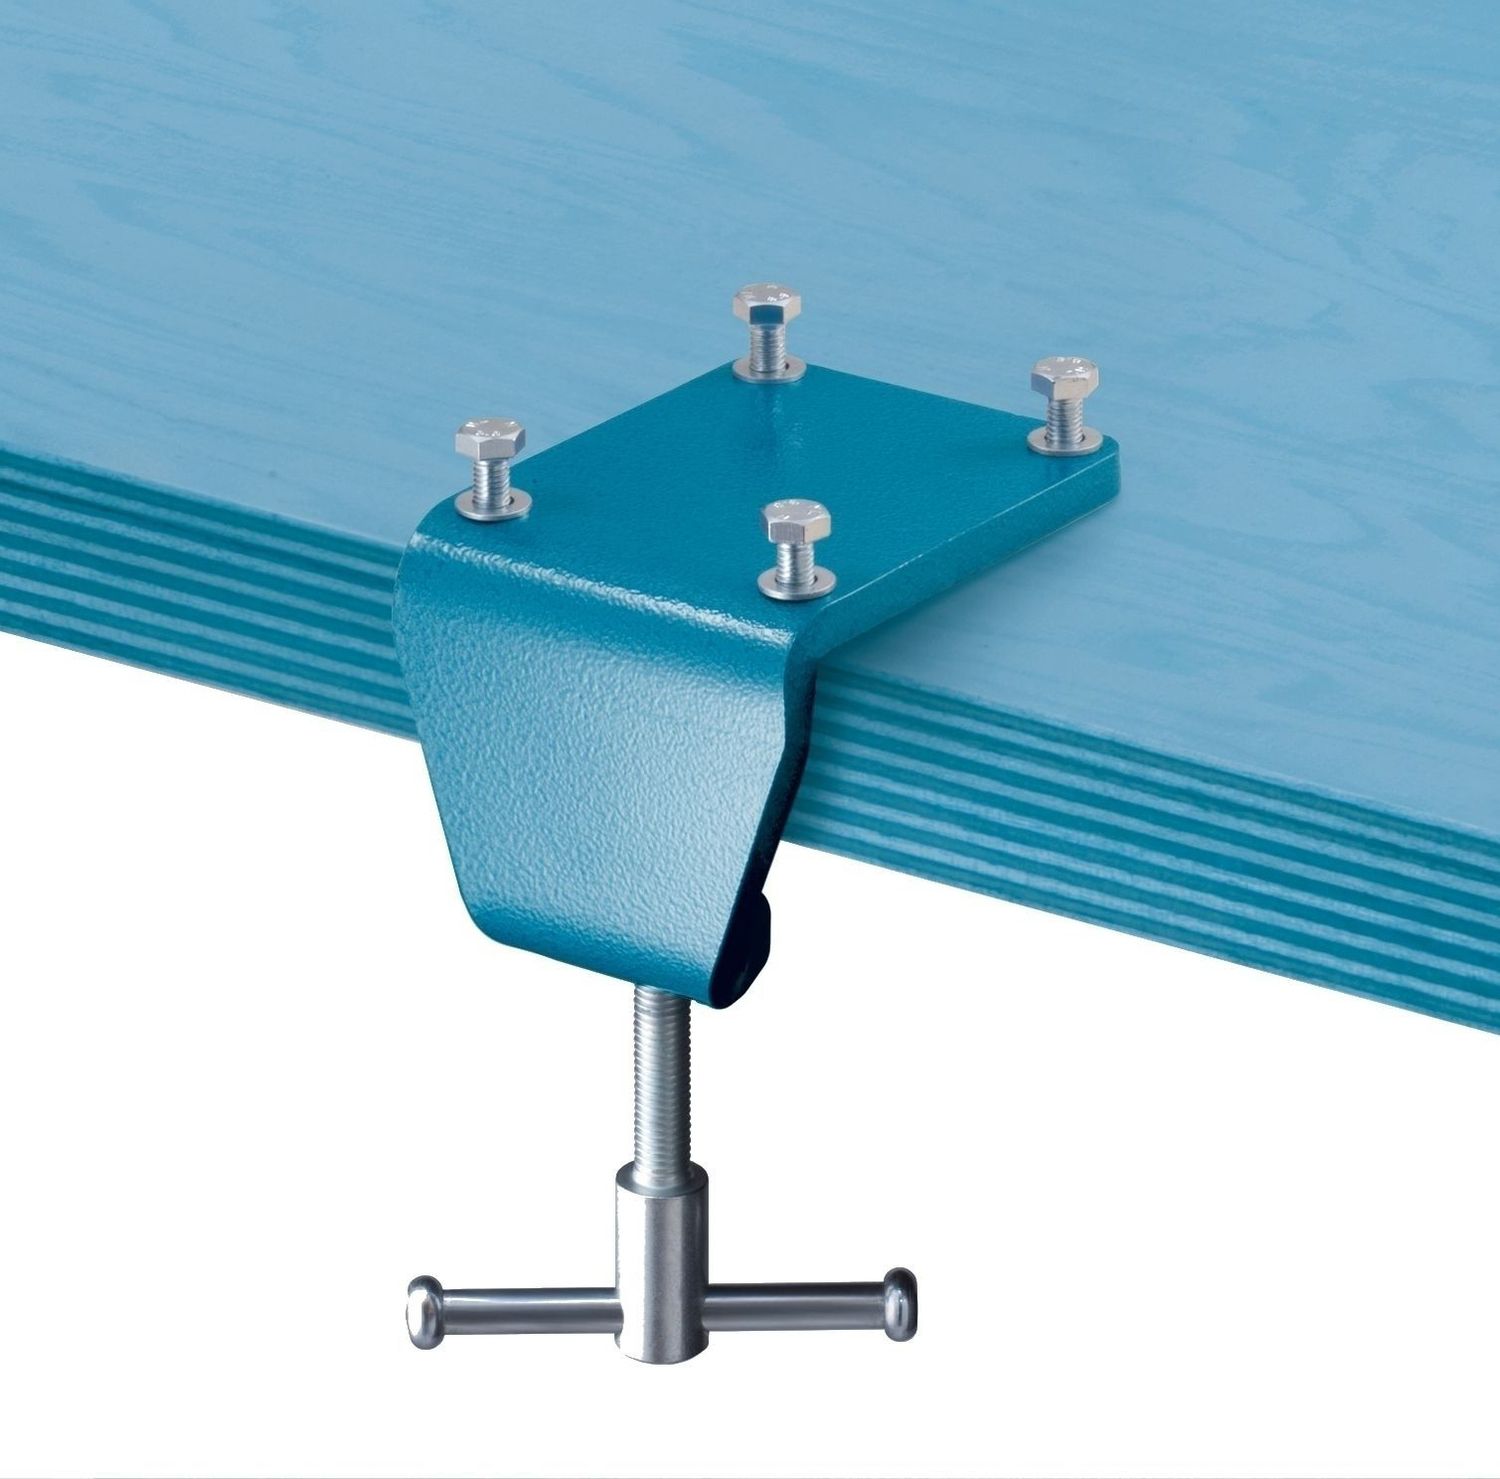 HEUER Tischklammer für Schraubstock mit Backenbreite 100 mm